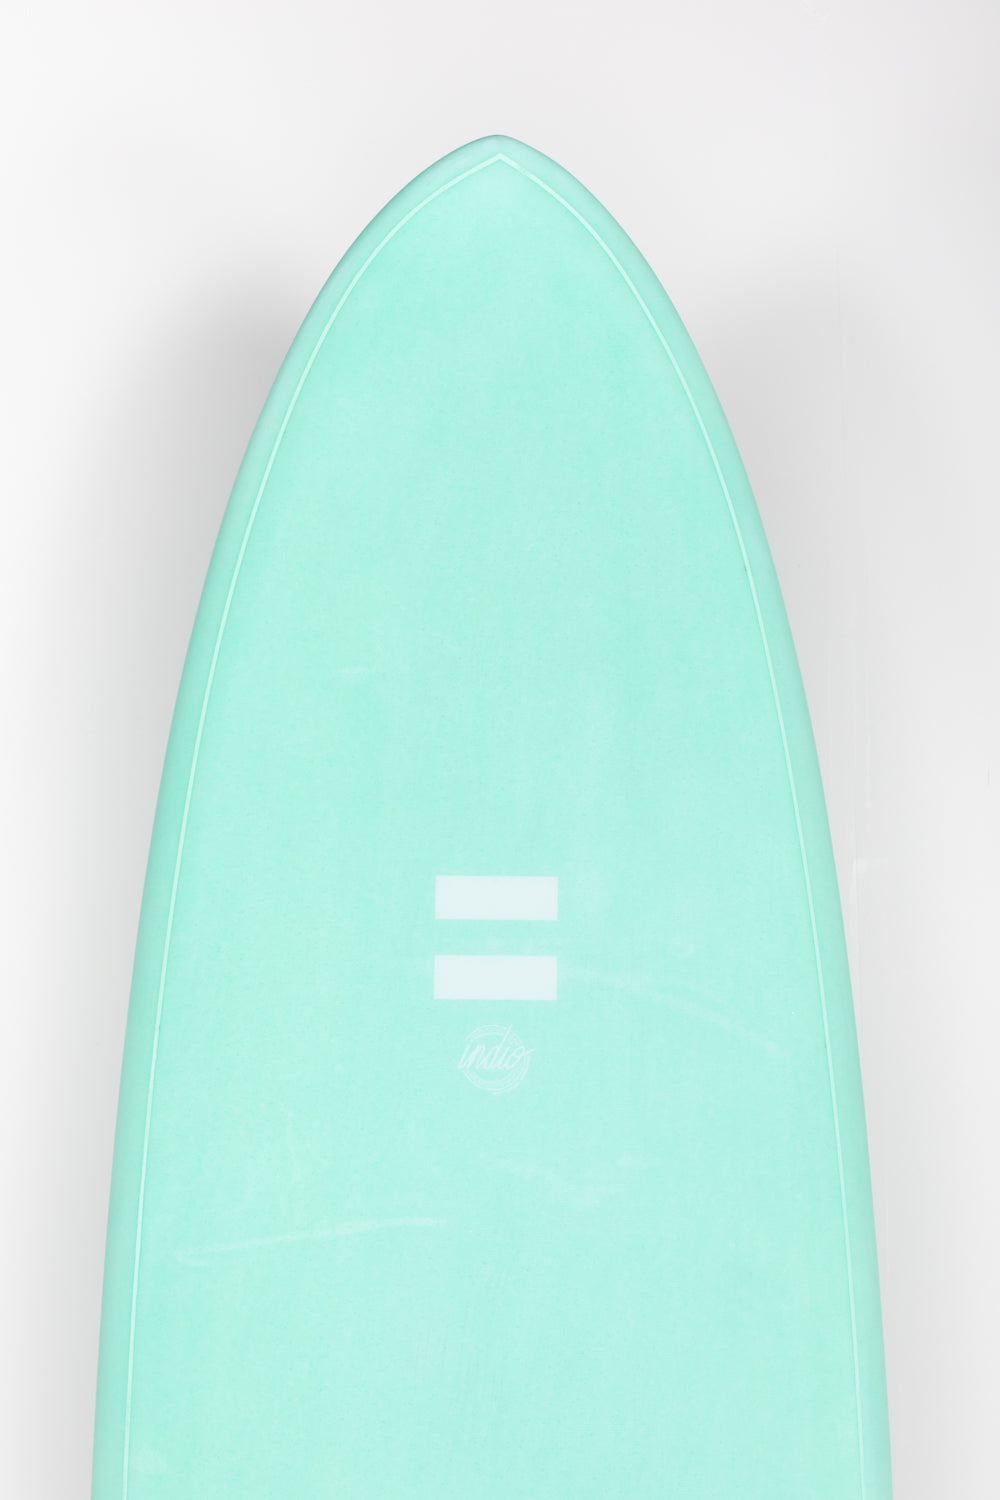 
                  
                    Pukas Surf Shop - Indio Endurance - THE EGG Aqua Mint - 7´2 x 21 3/4 x 2 3/4 - 50L
                  
                